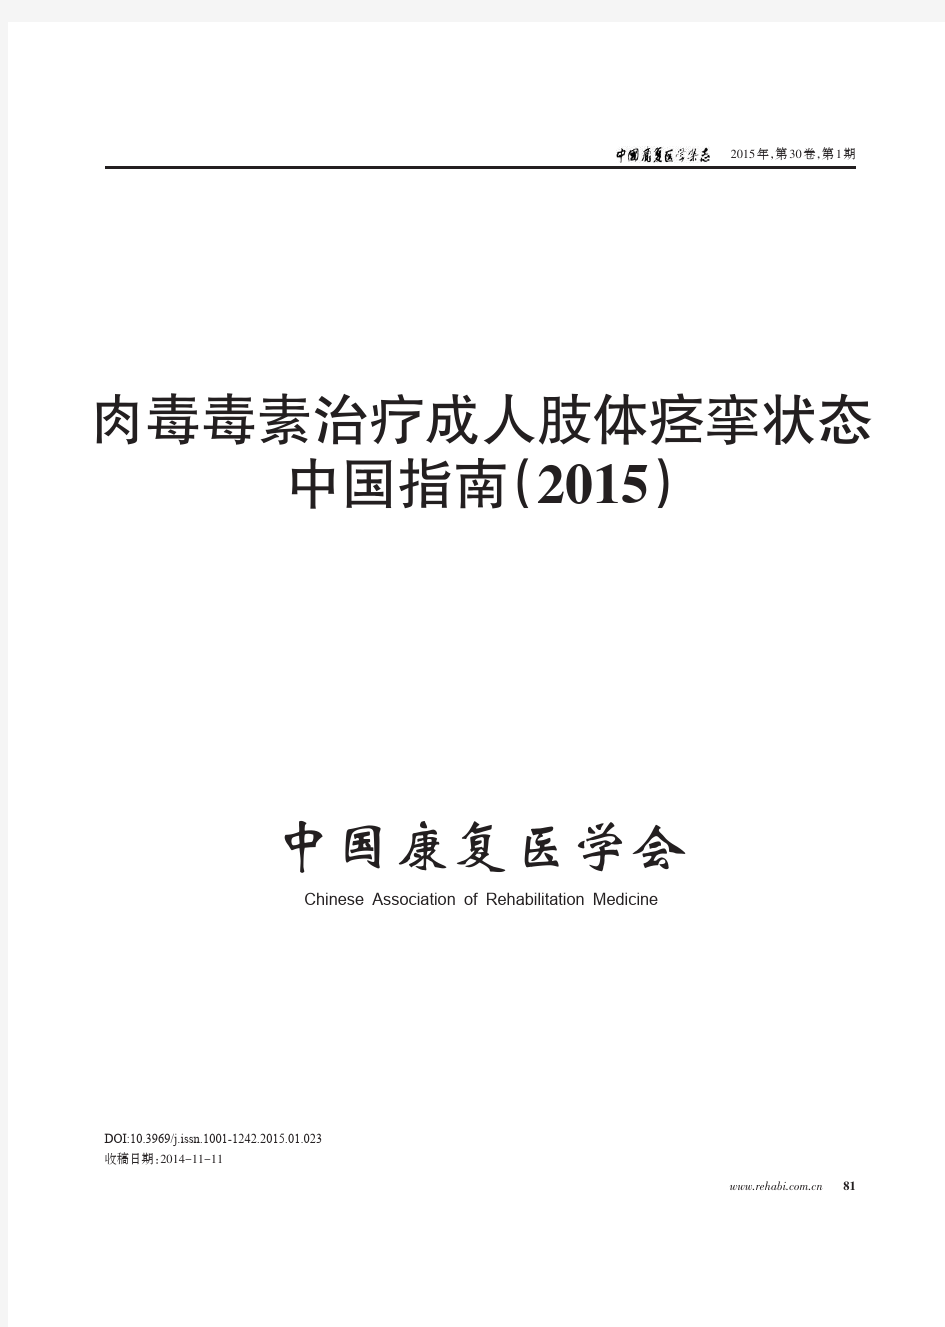 肉毒毒素治疗成人肢体痉挛状态中国指南(2015)